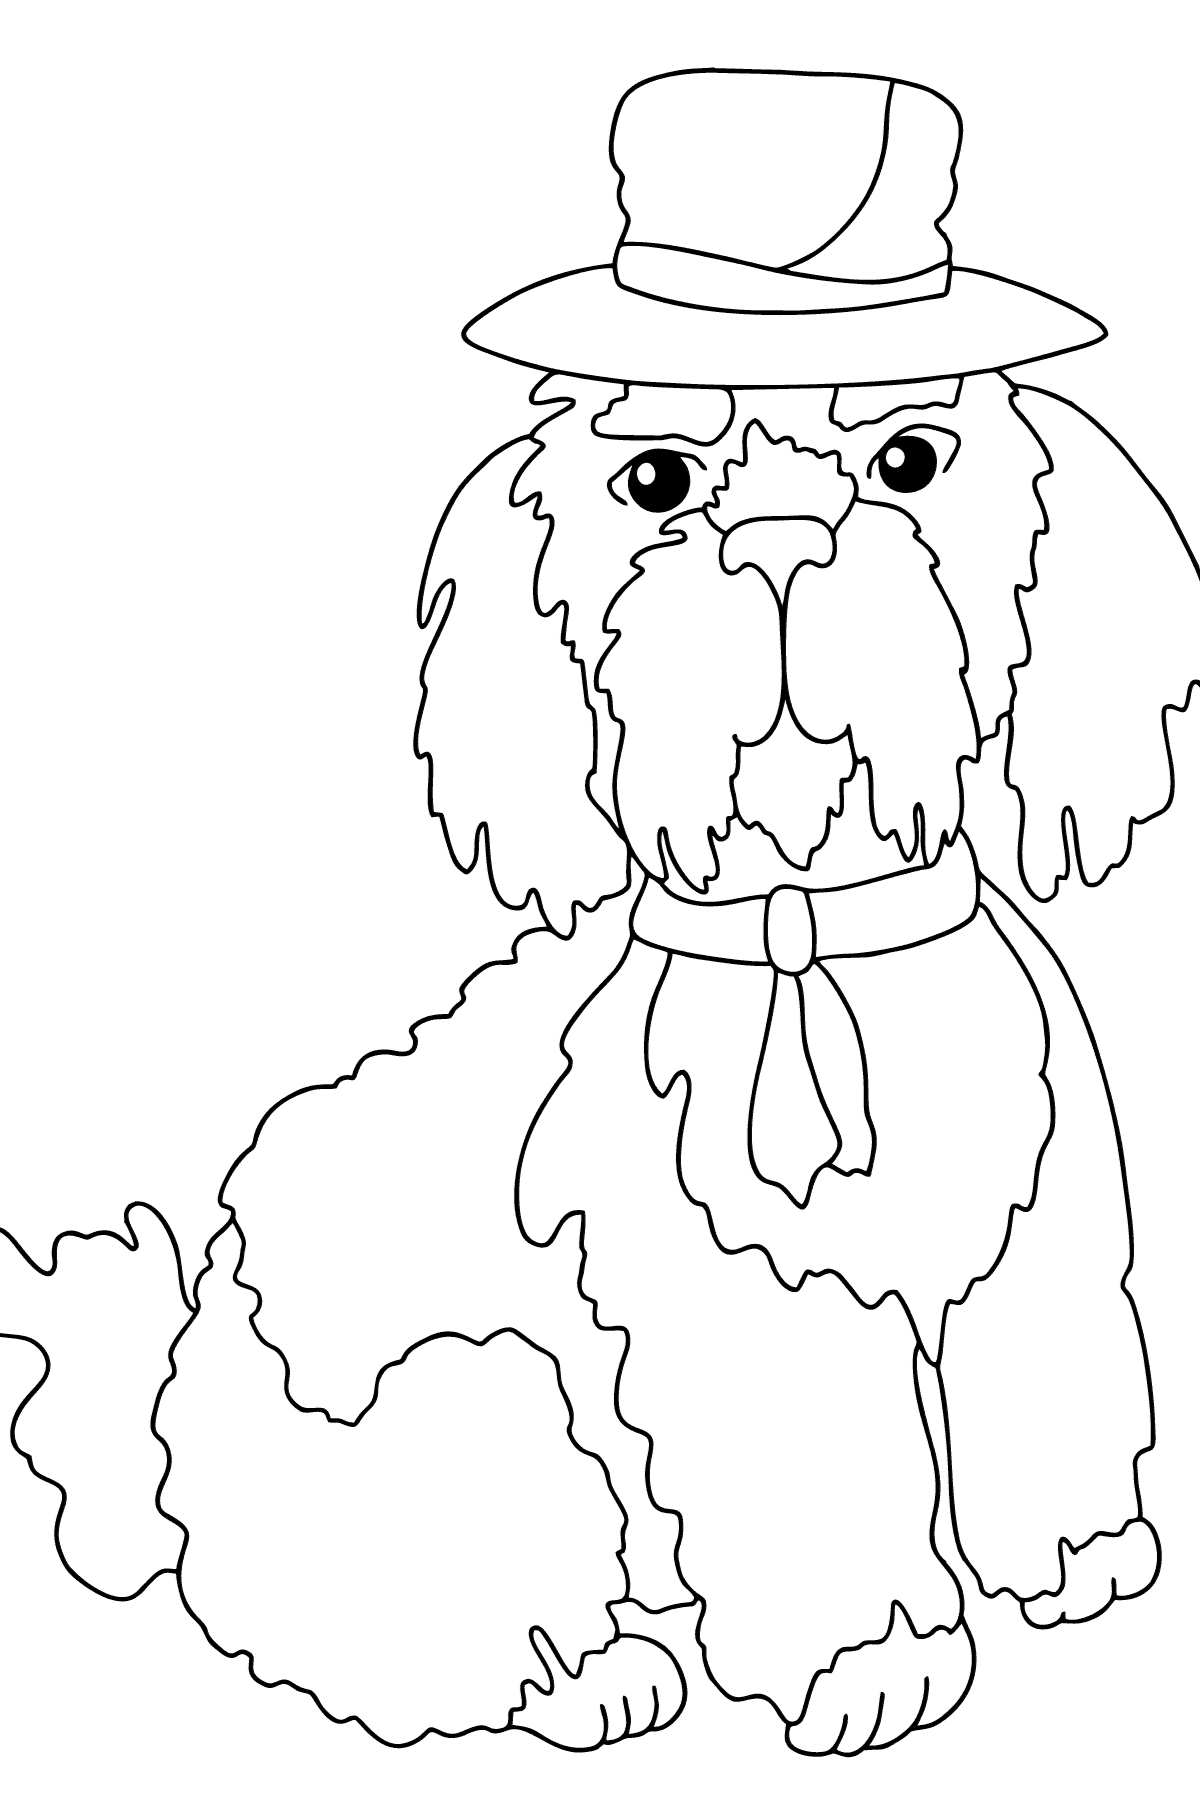 Раскраска собака в красивой шляпке - Картинки для Детей